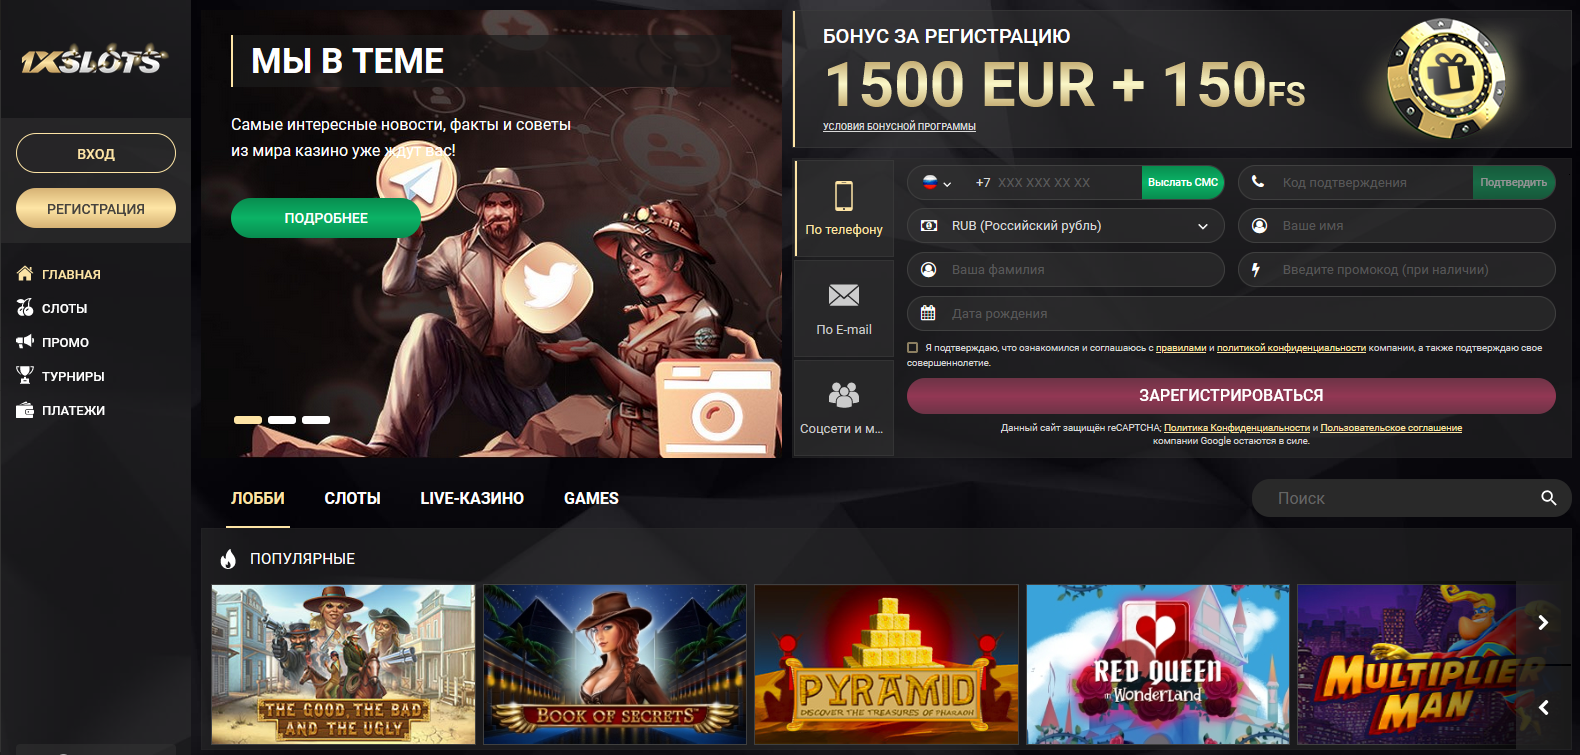 1xslots casino официальный сайт скачать казино вулкан премиум игровые автоматы играть бесплатно онлайн